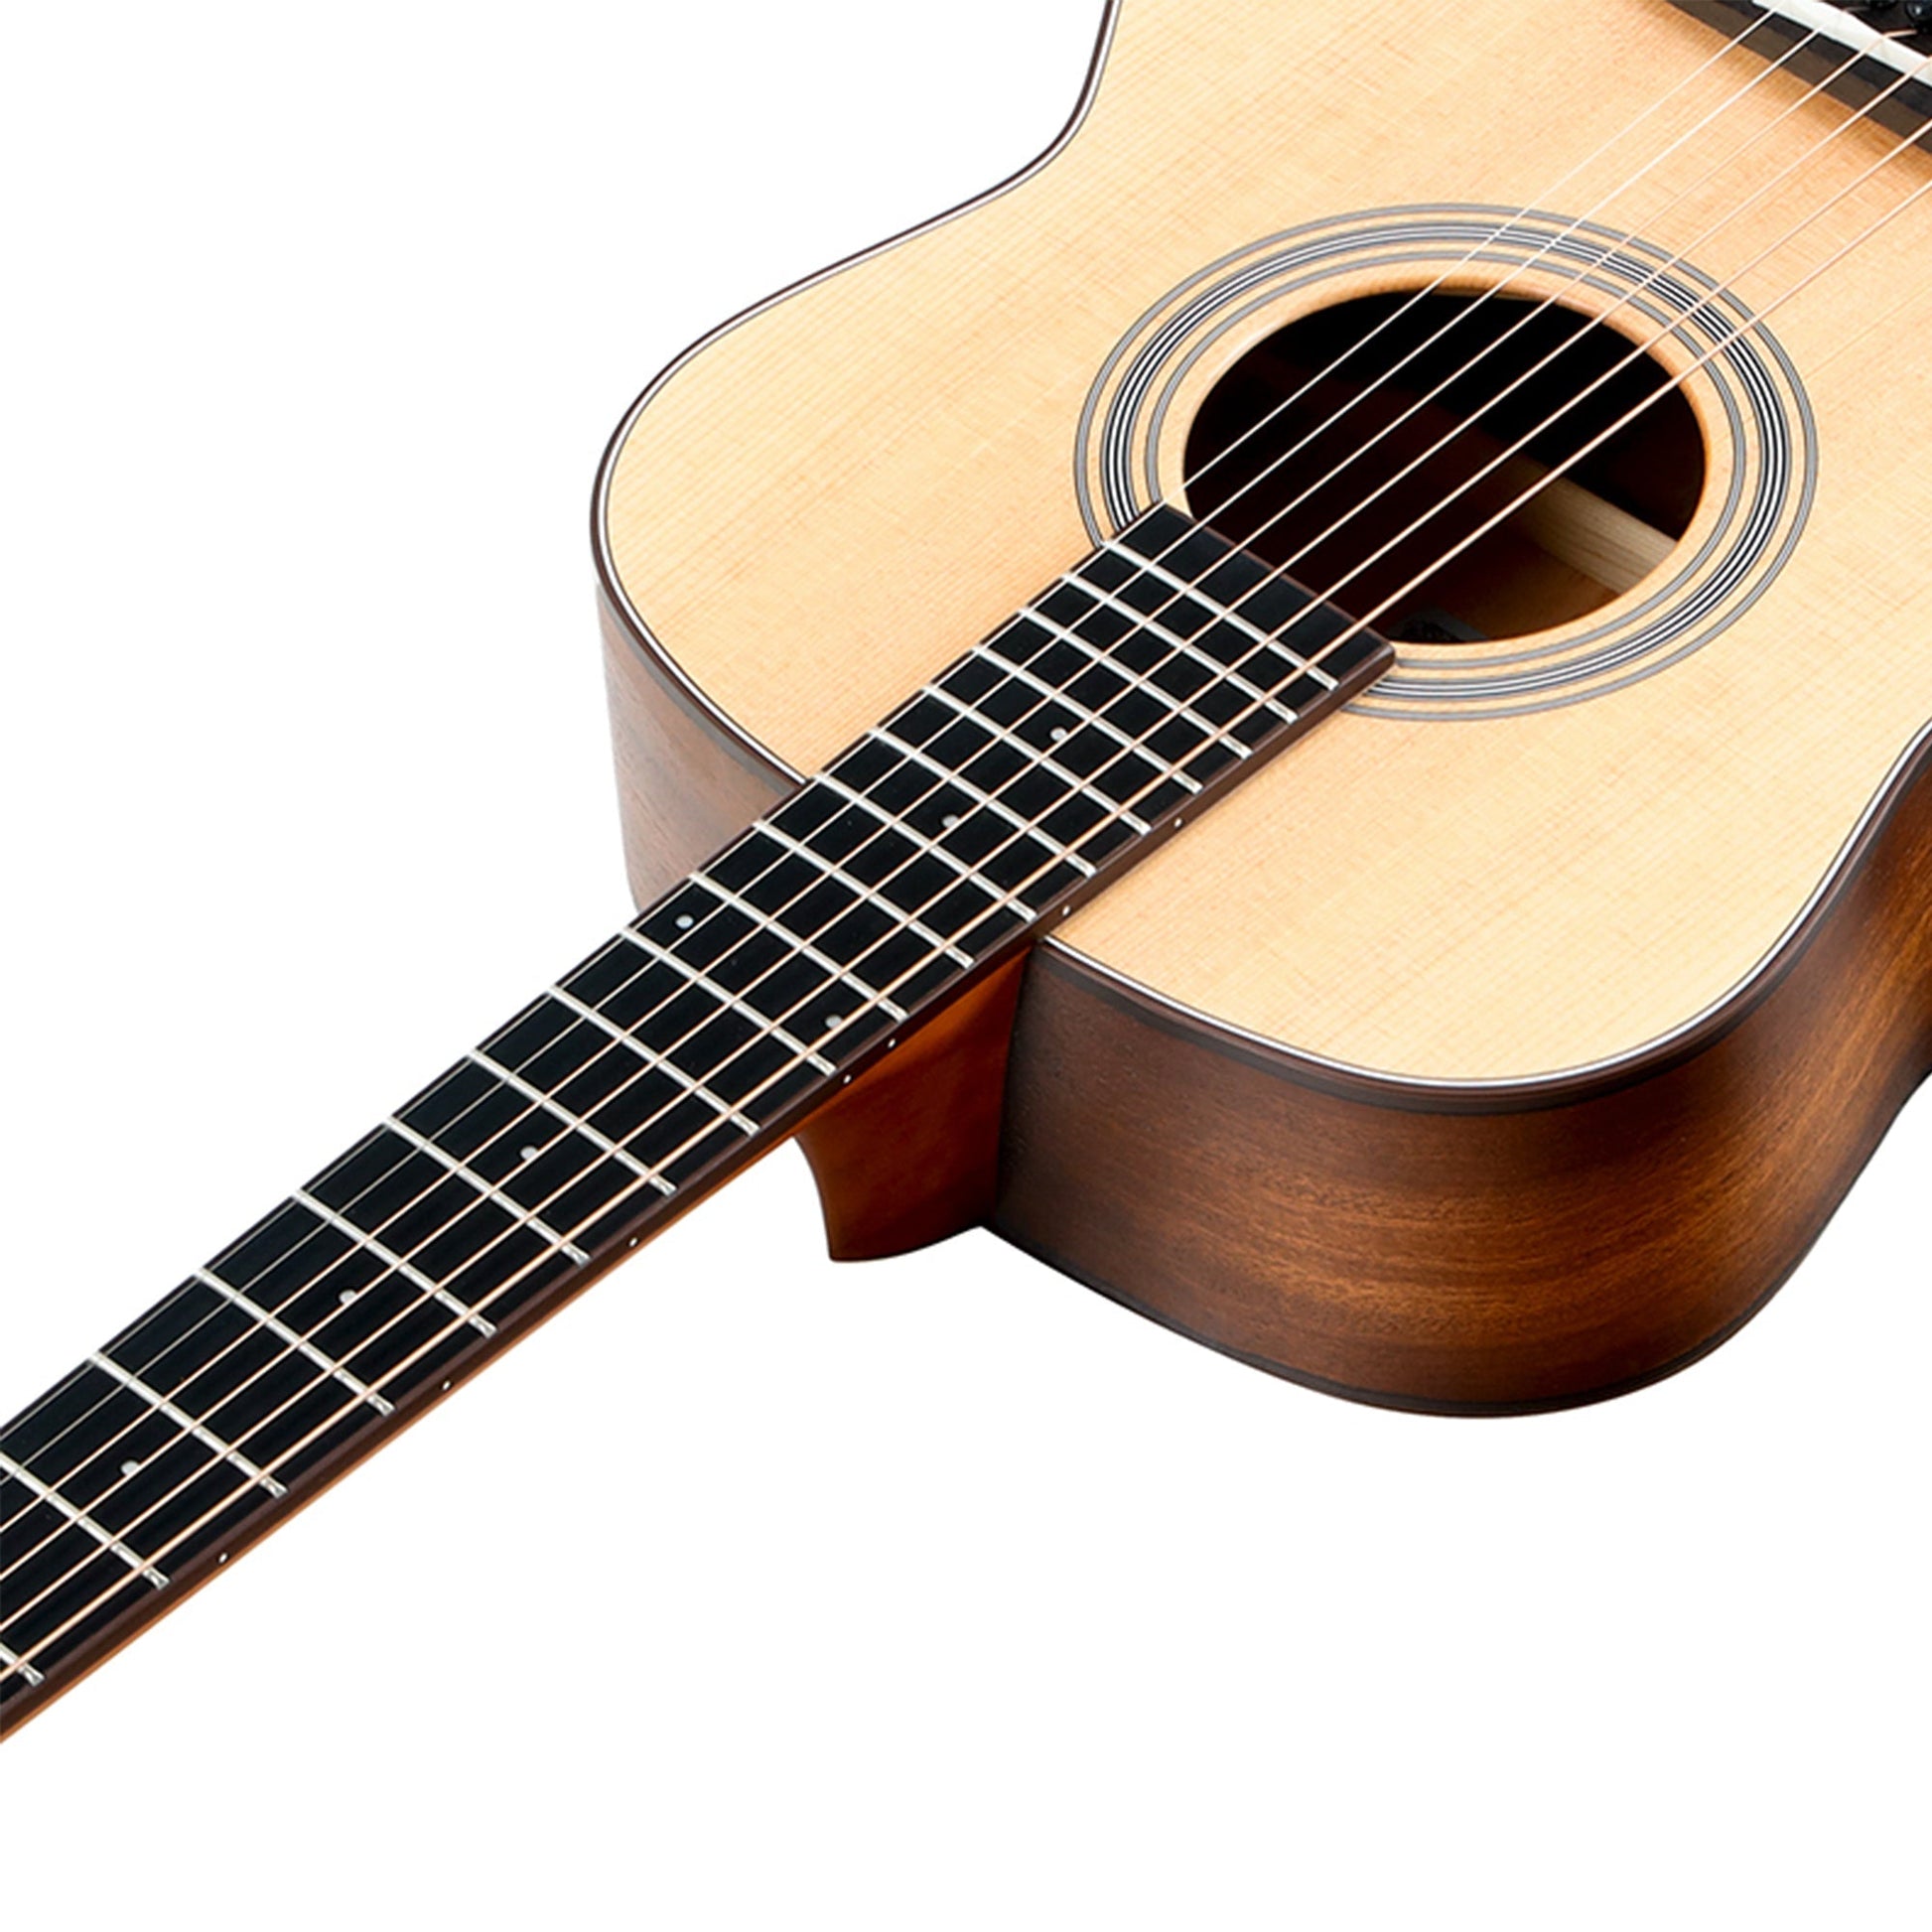 Đàn Guitar Acoustic Saga GS700 - Việt Music